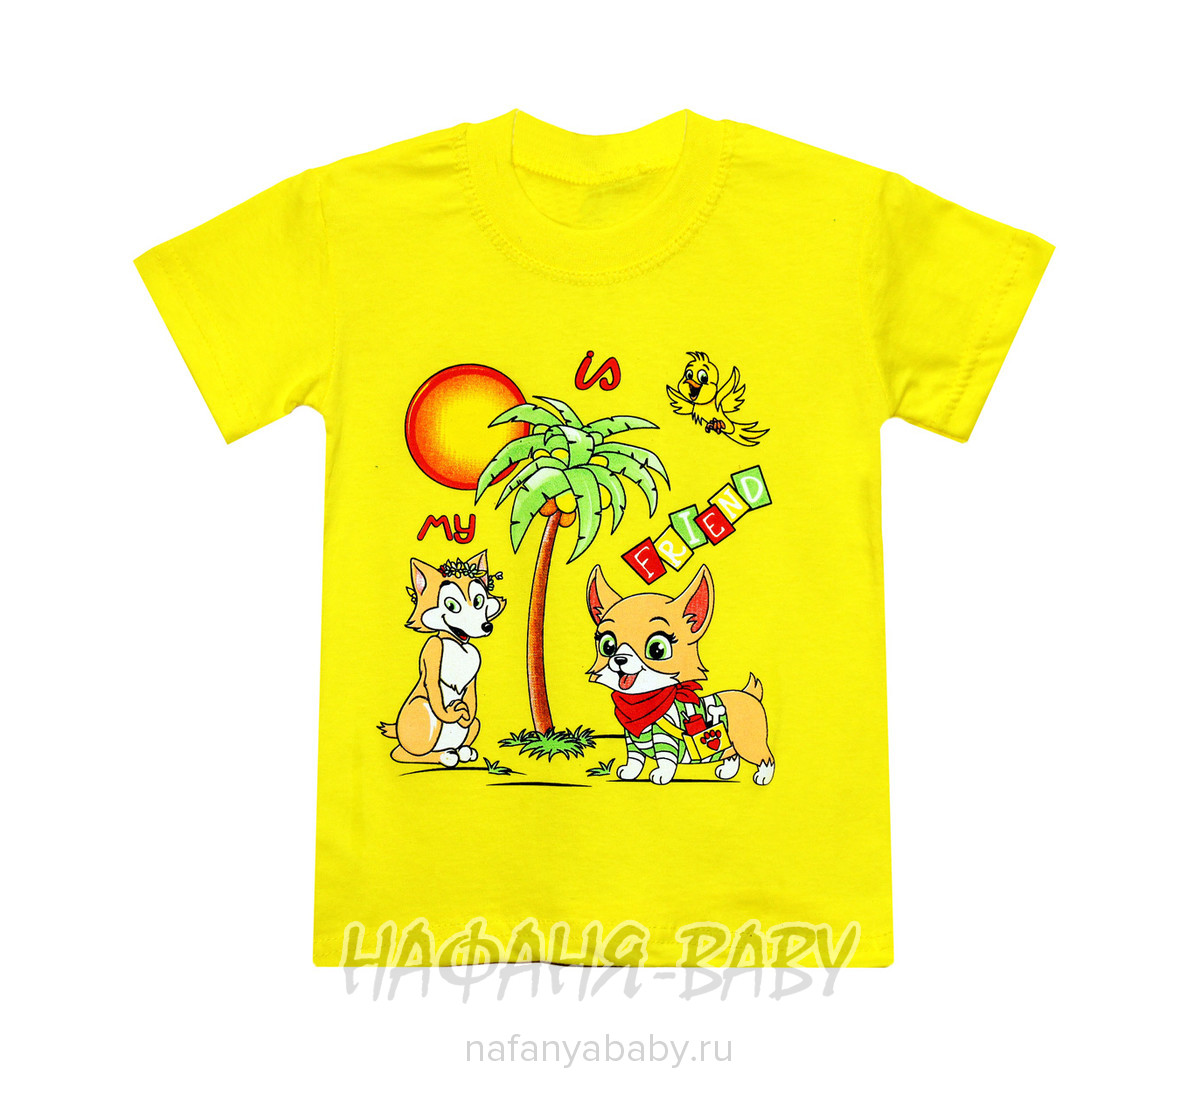 Детская футболка HASAN Bebe арт: 4021, 1-4 года, оптом Турция